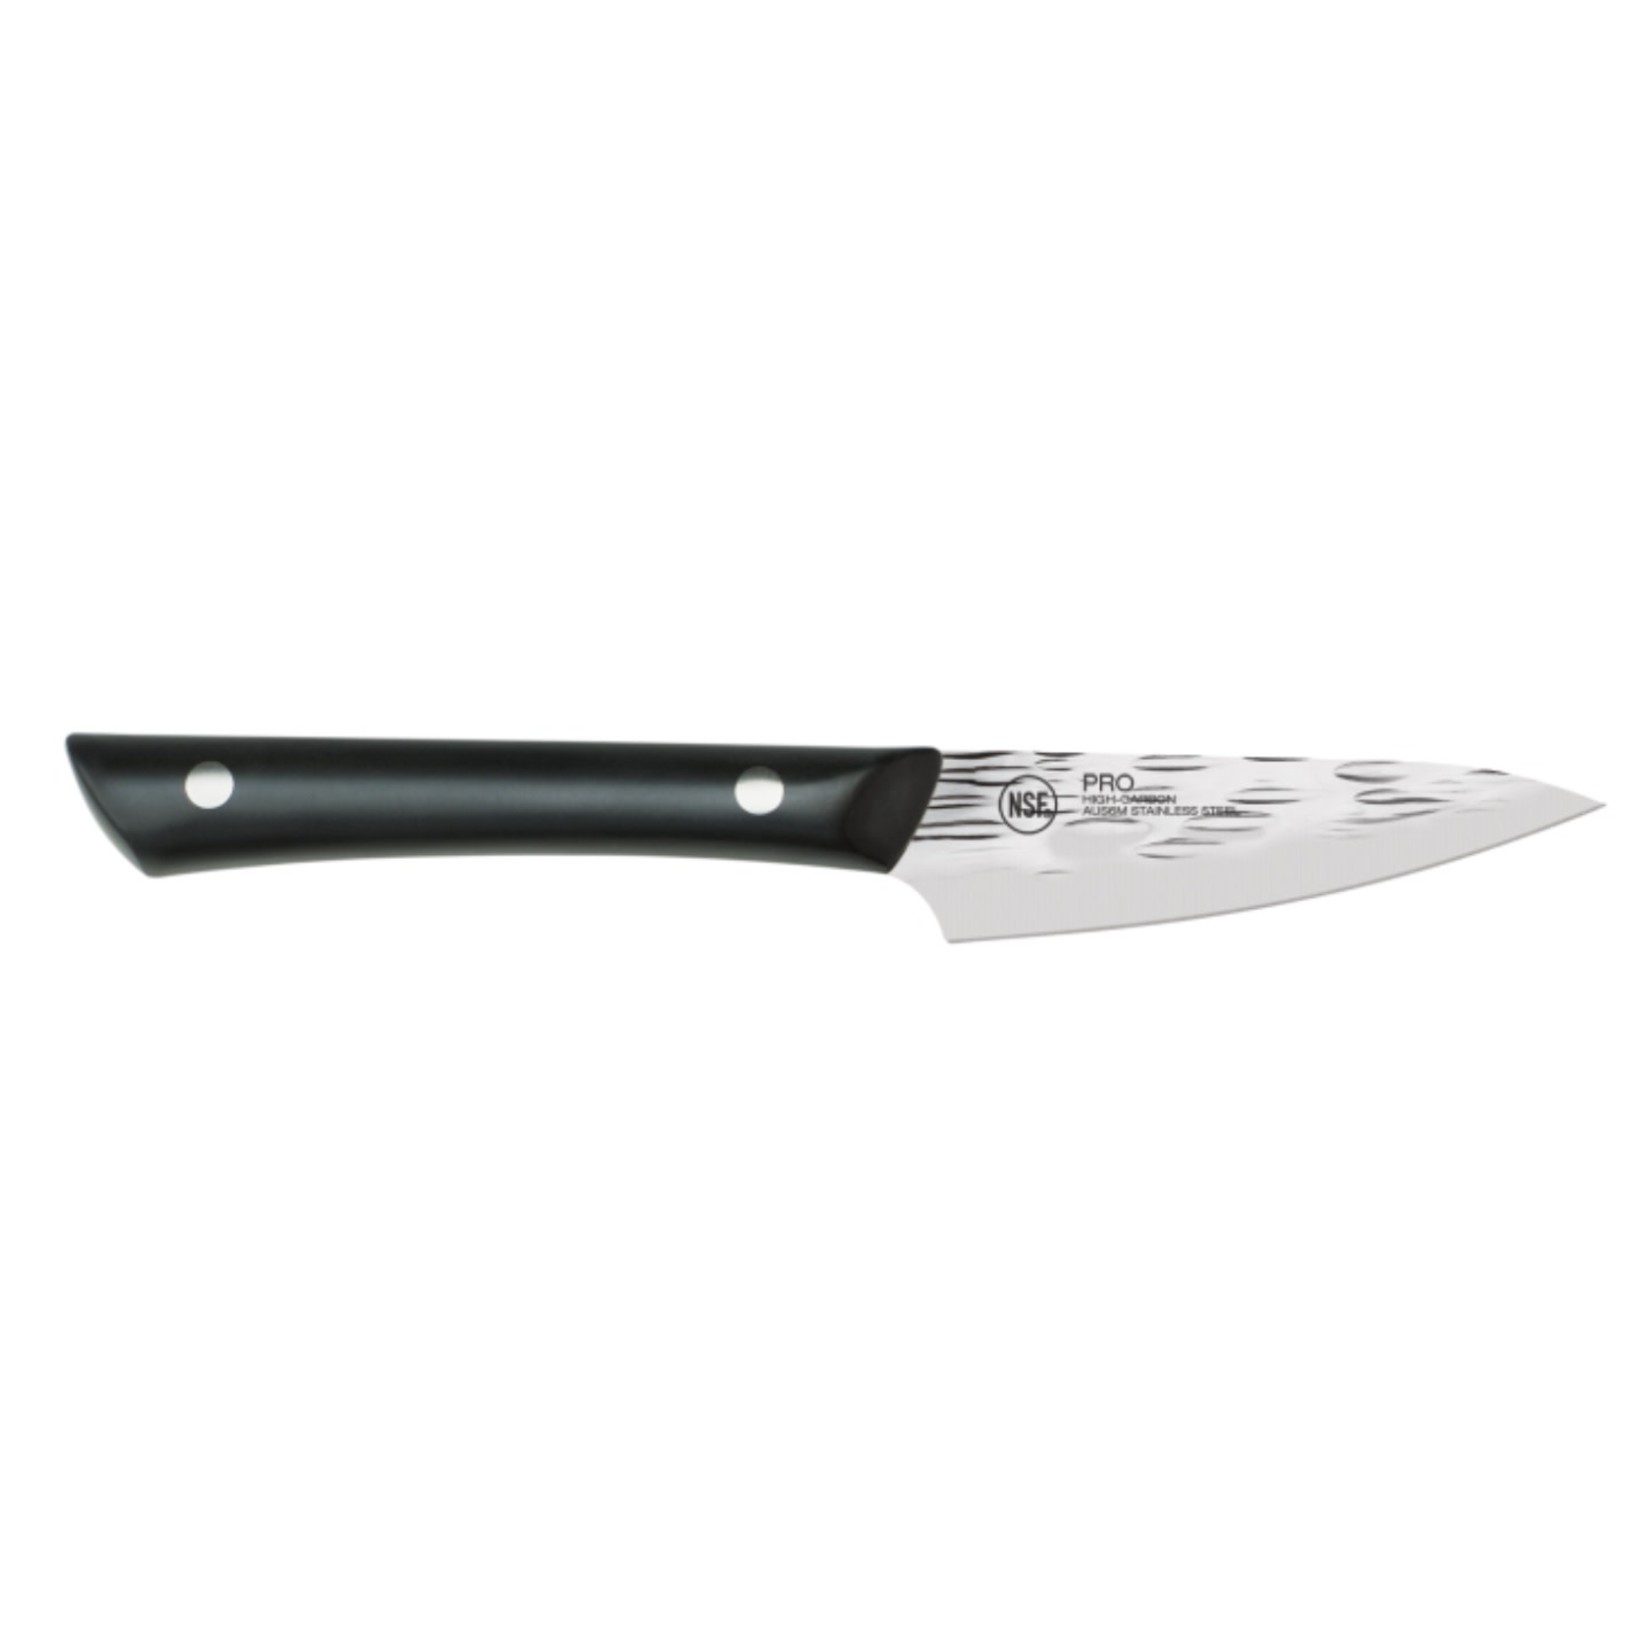 KAI KAI Professional Paring Knife 3.5" REG $39.99